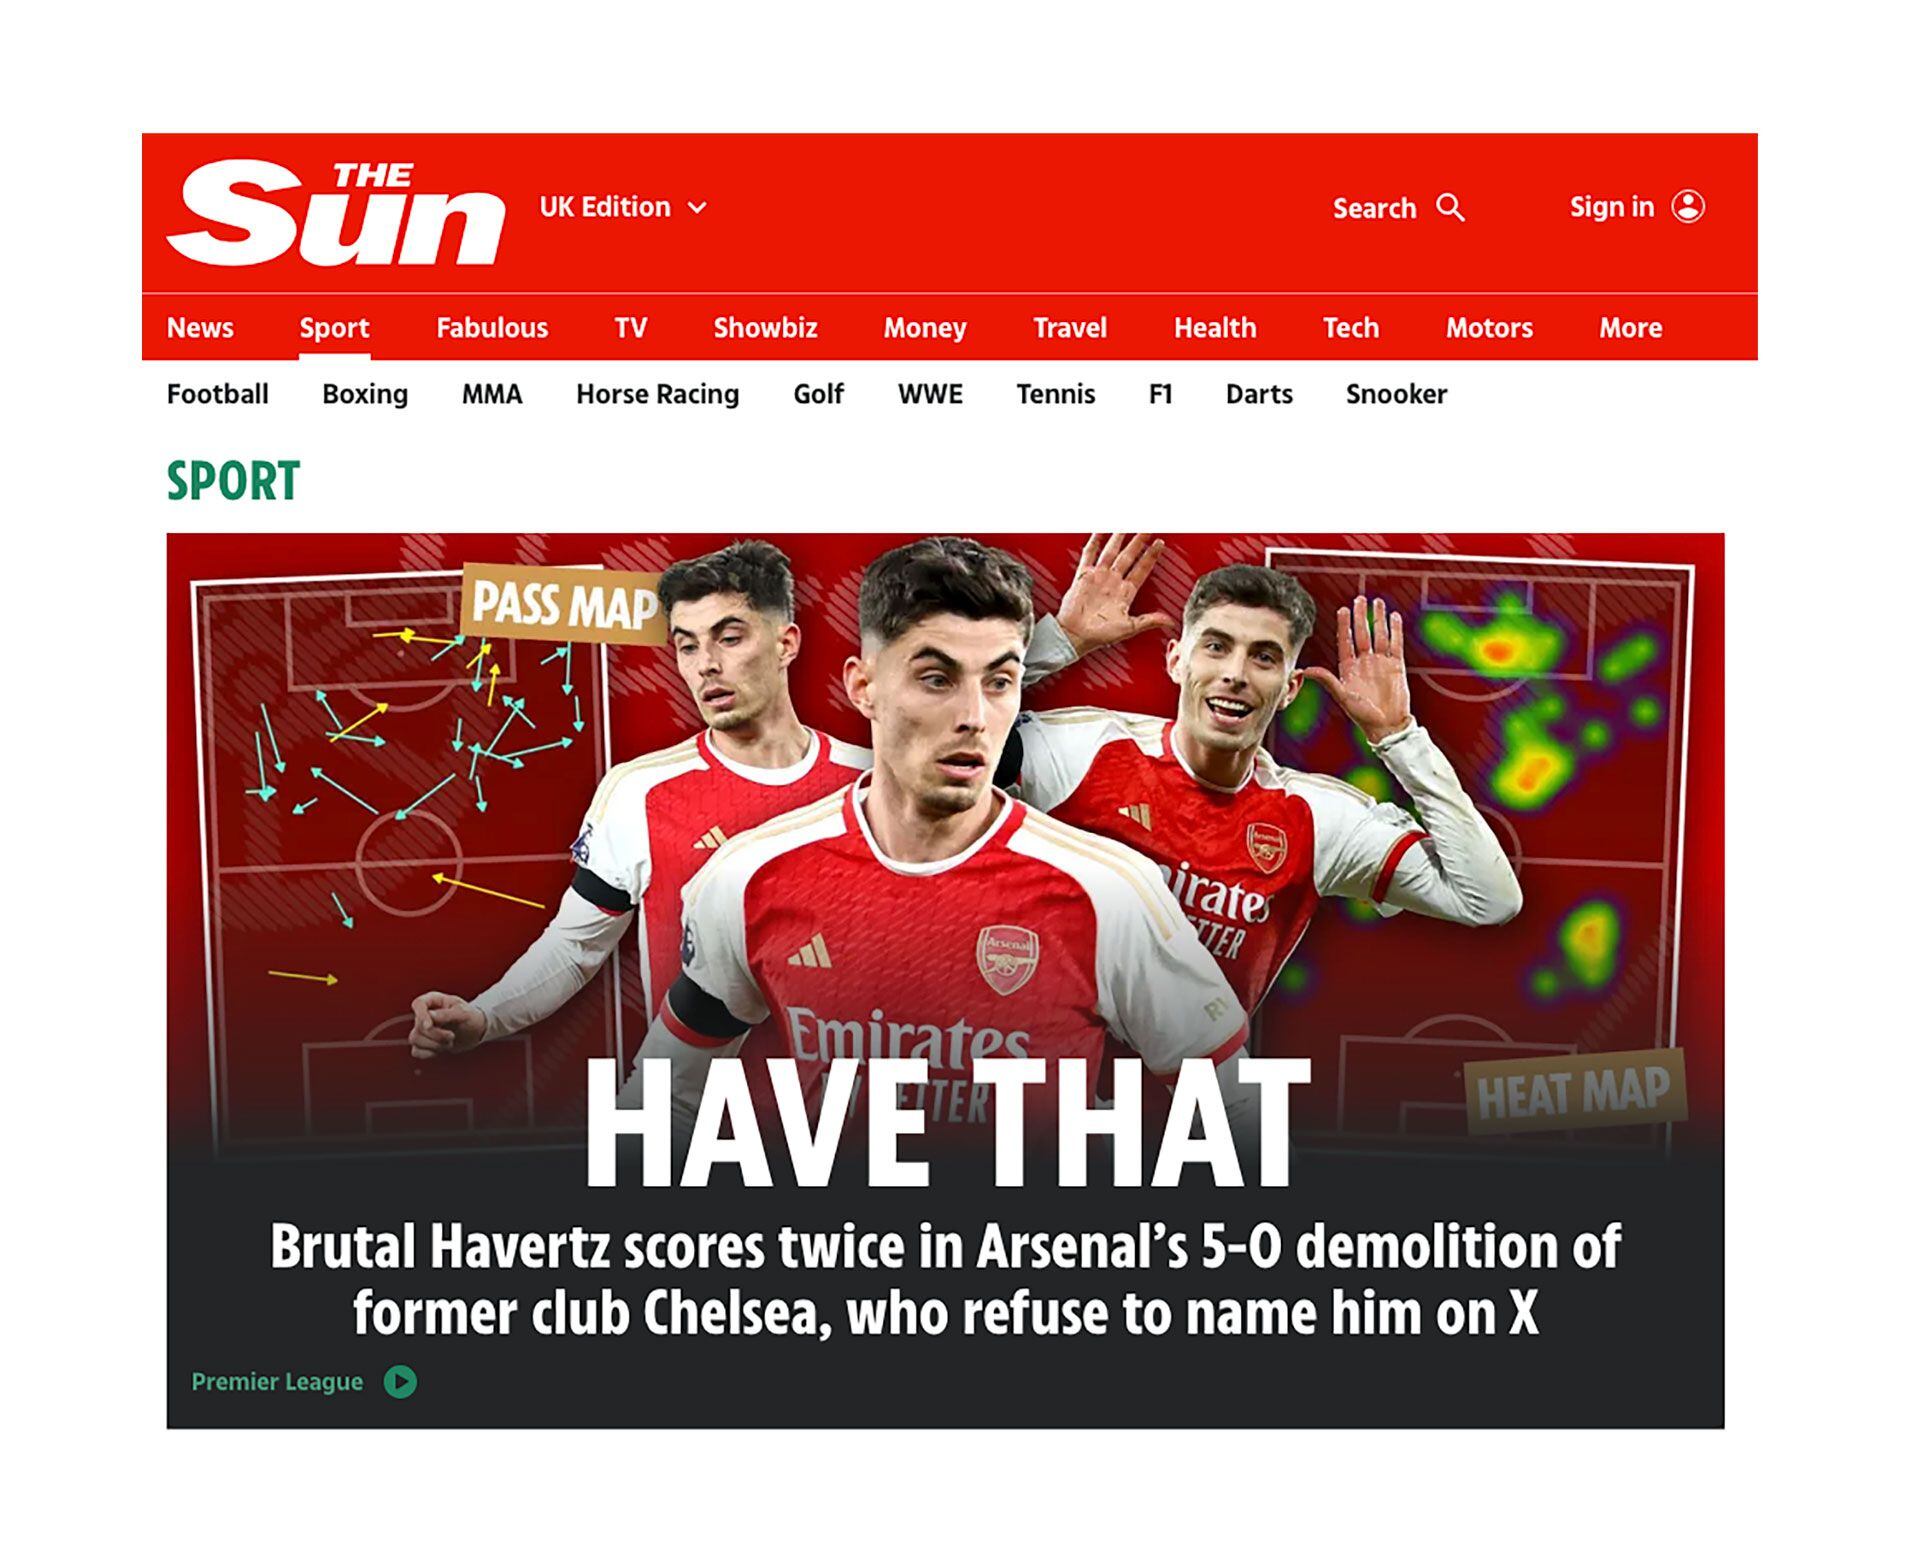 La portada de The Sun: "El brutal Havertz anotó dos goles en la victoria del Arsenal por 5-0 sobre el ex club Chelsea, que se niega a nombrarlo"El Chelsea sufrió una goleada 5-0 en su visi